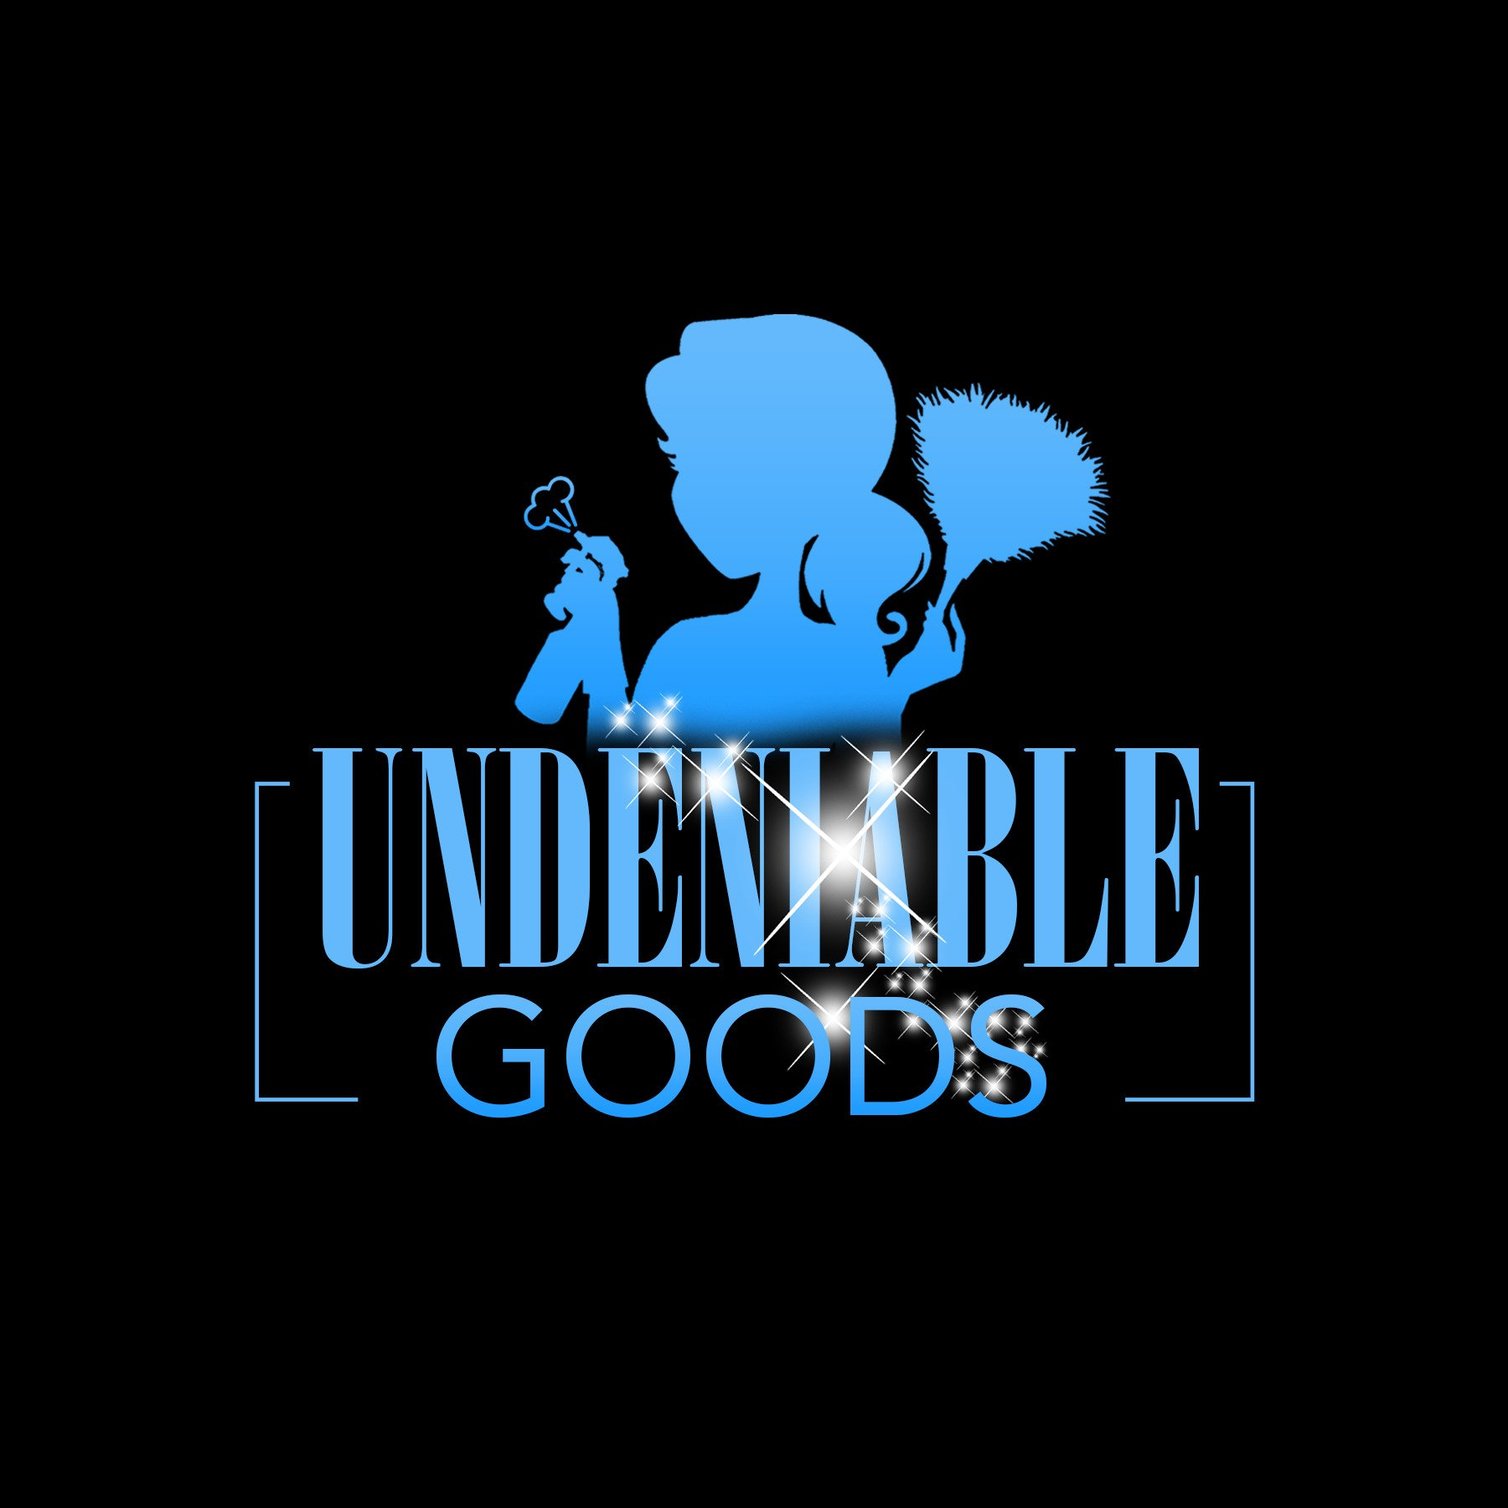 Undeniable Goods